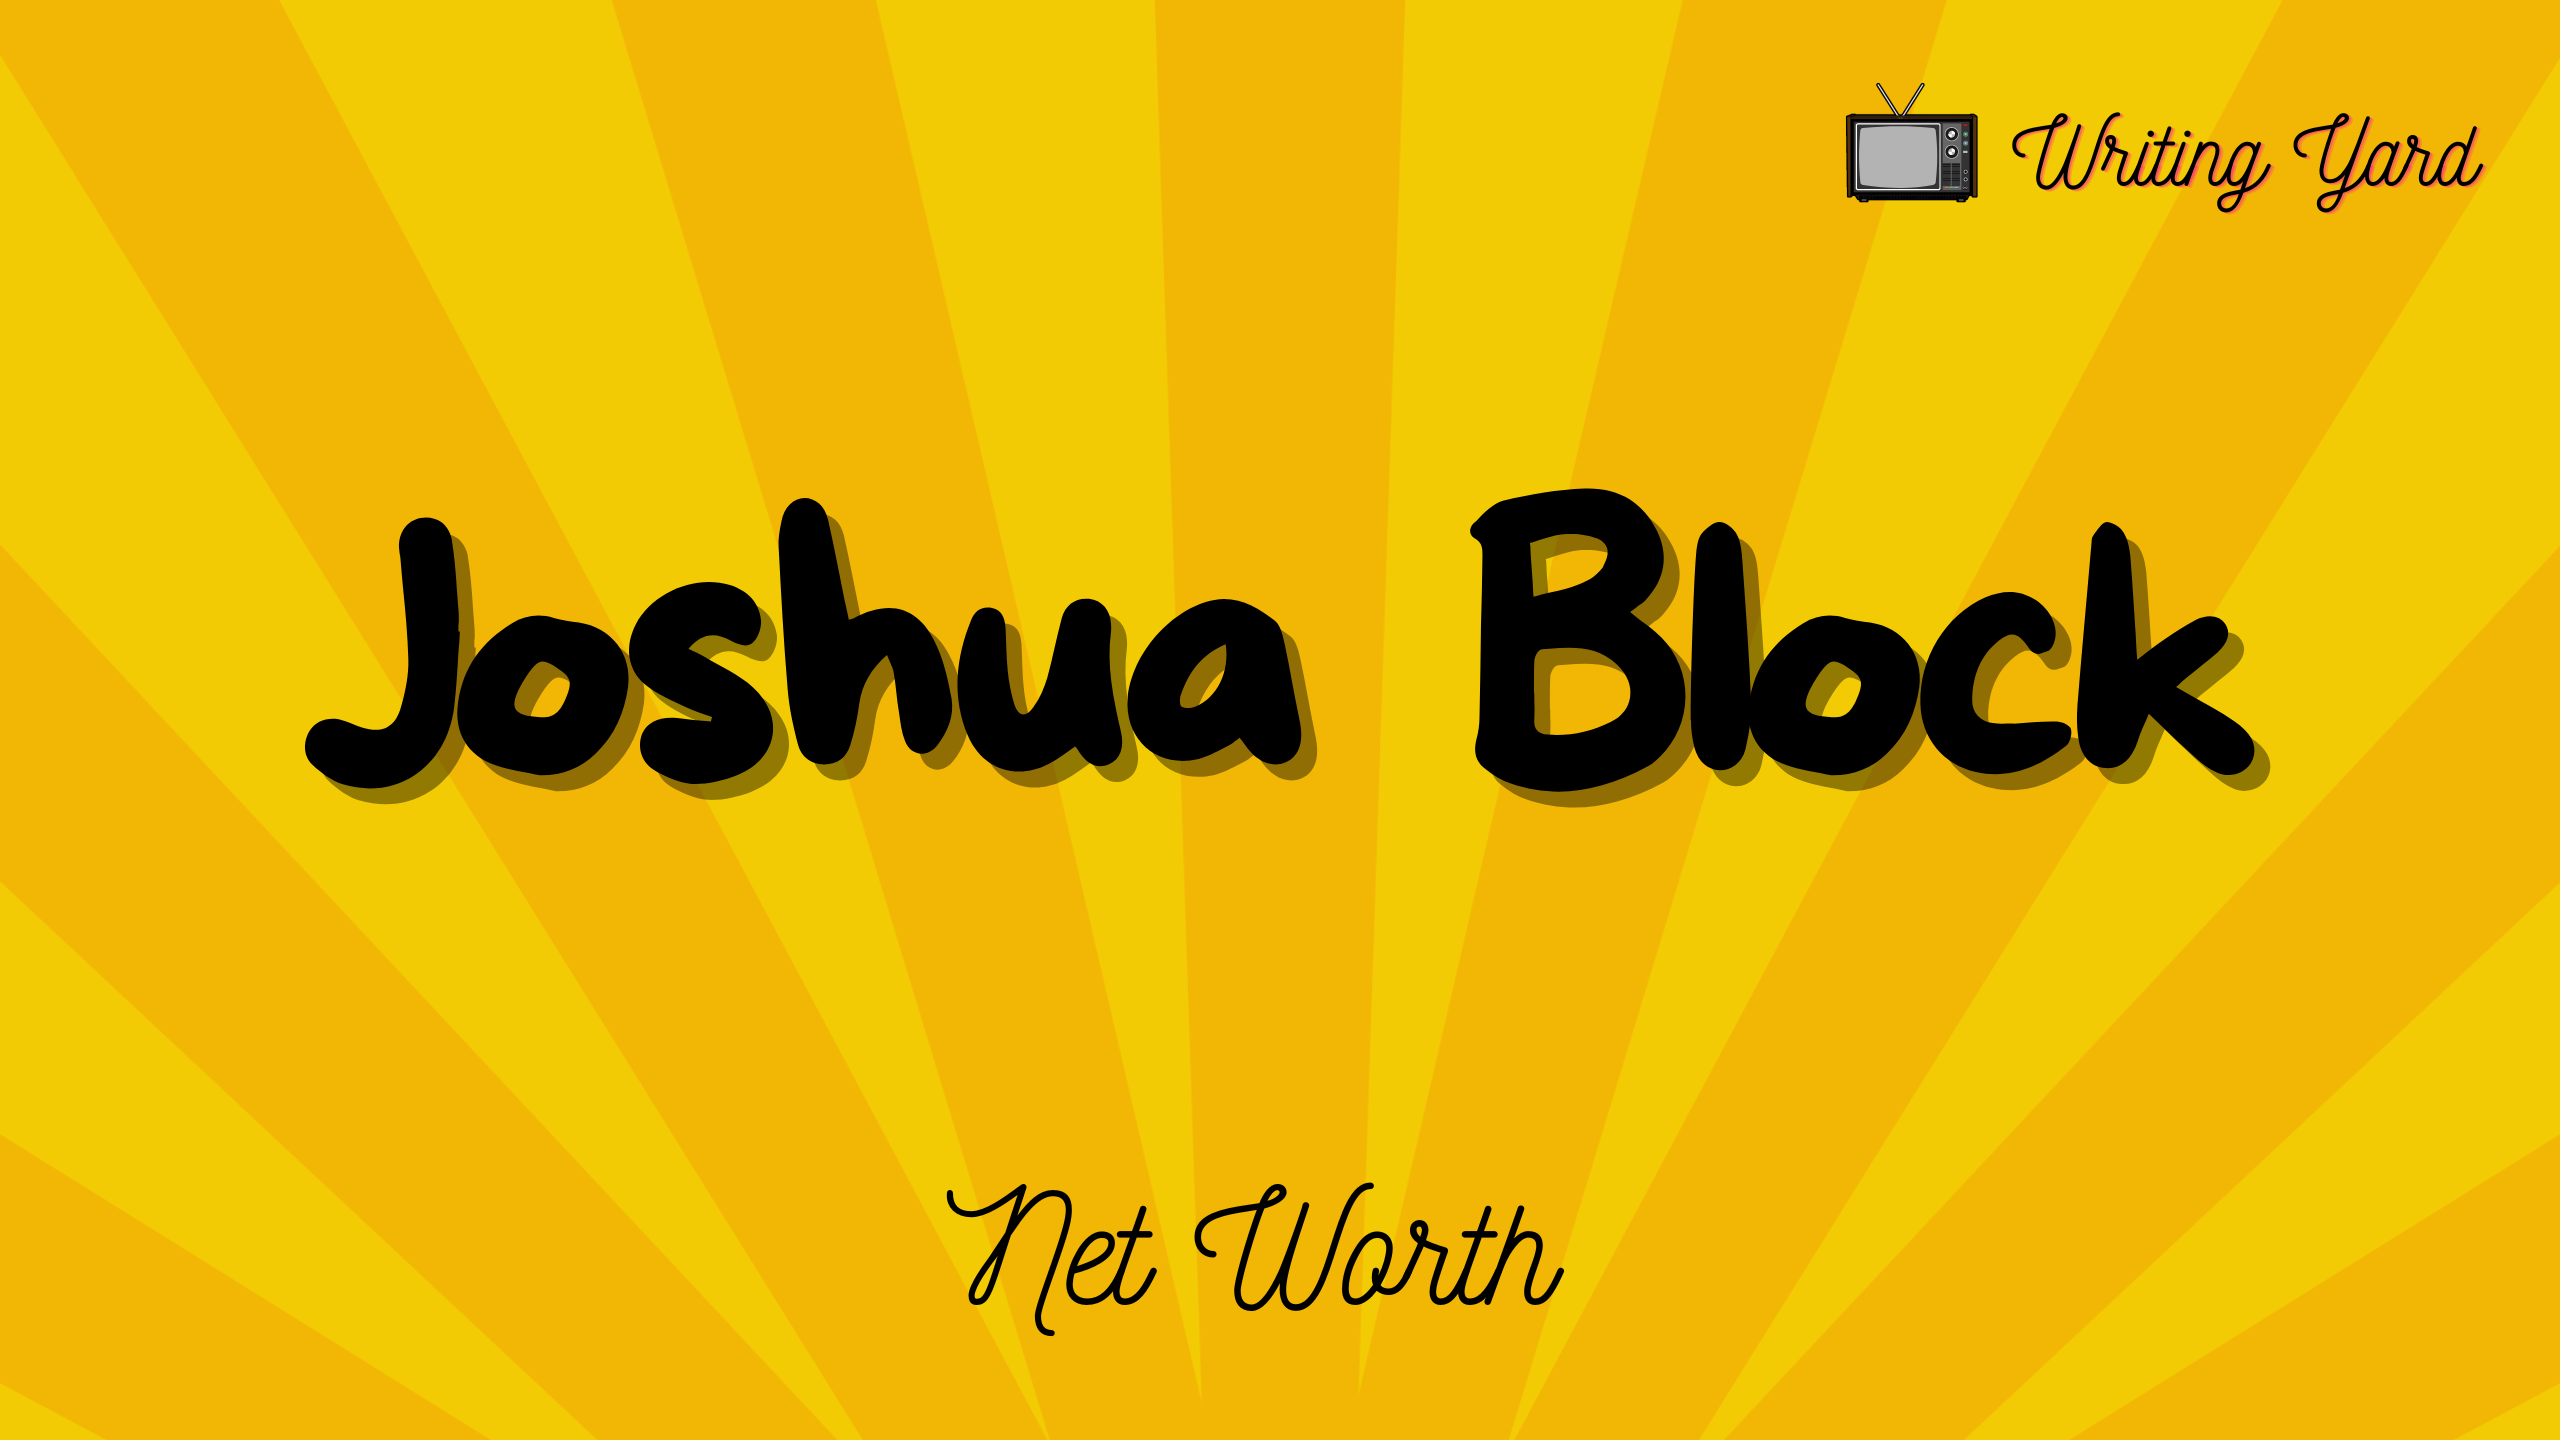 Joshua Block net worth